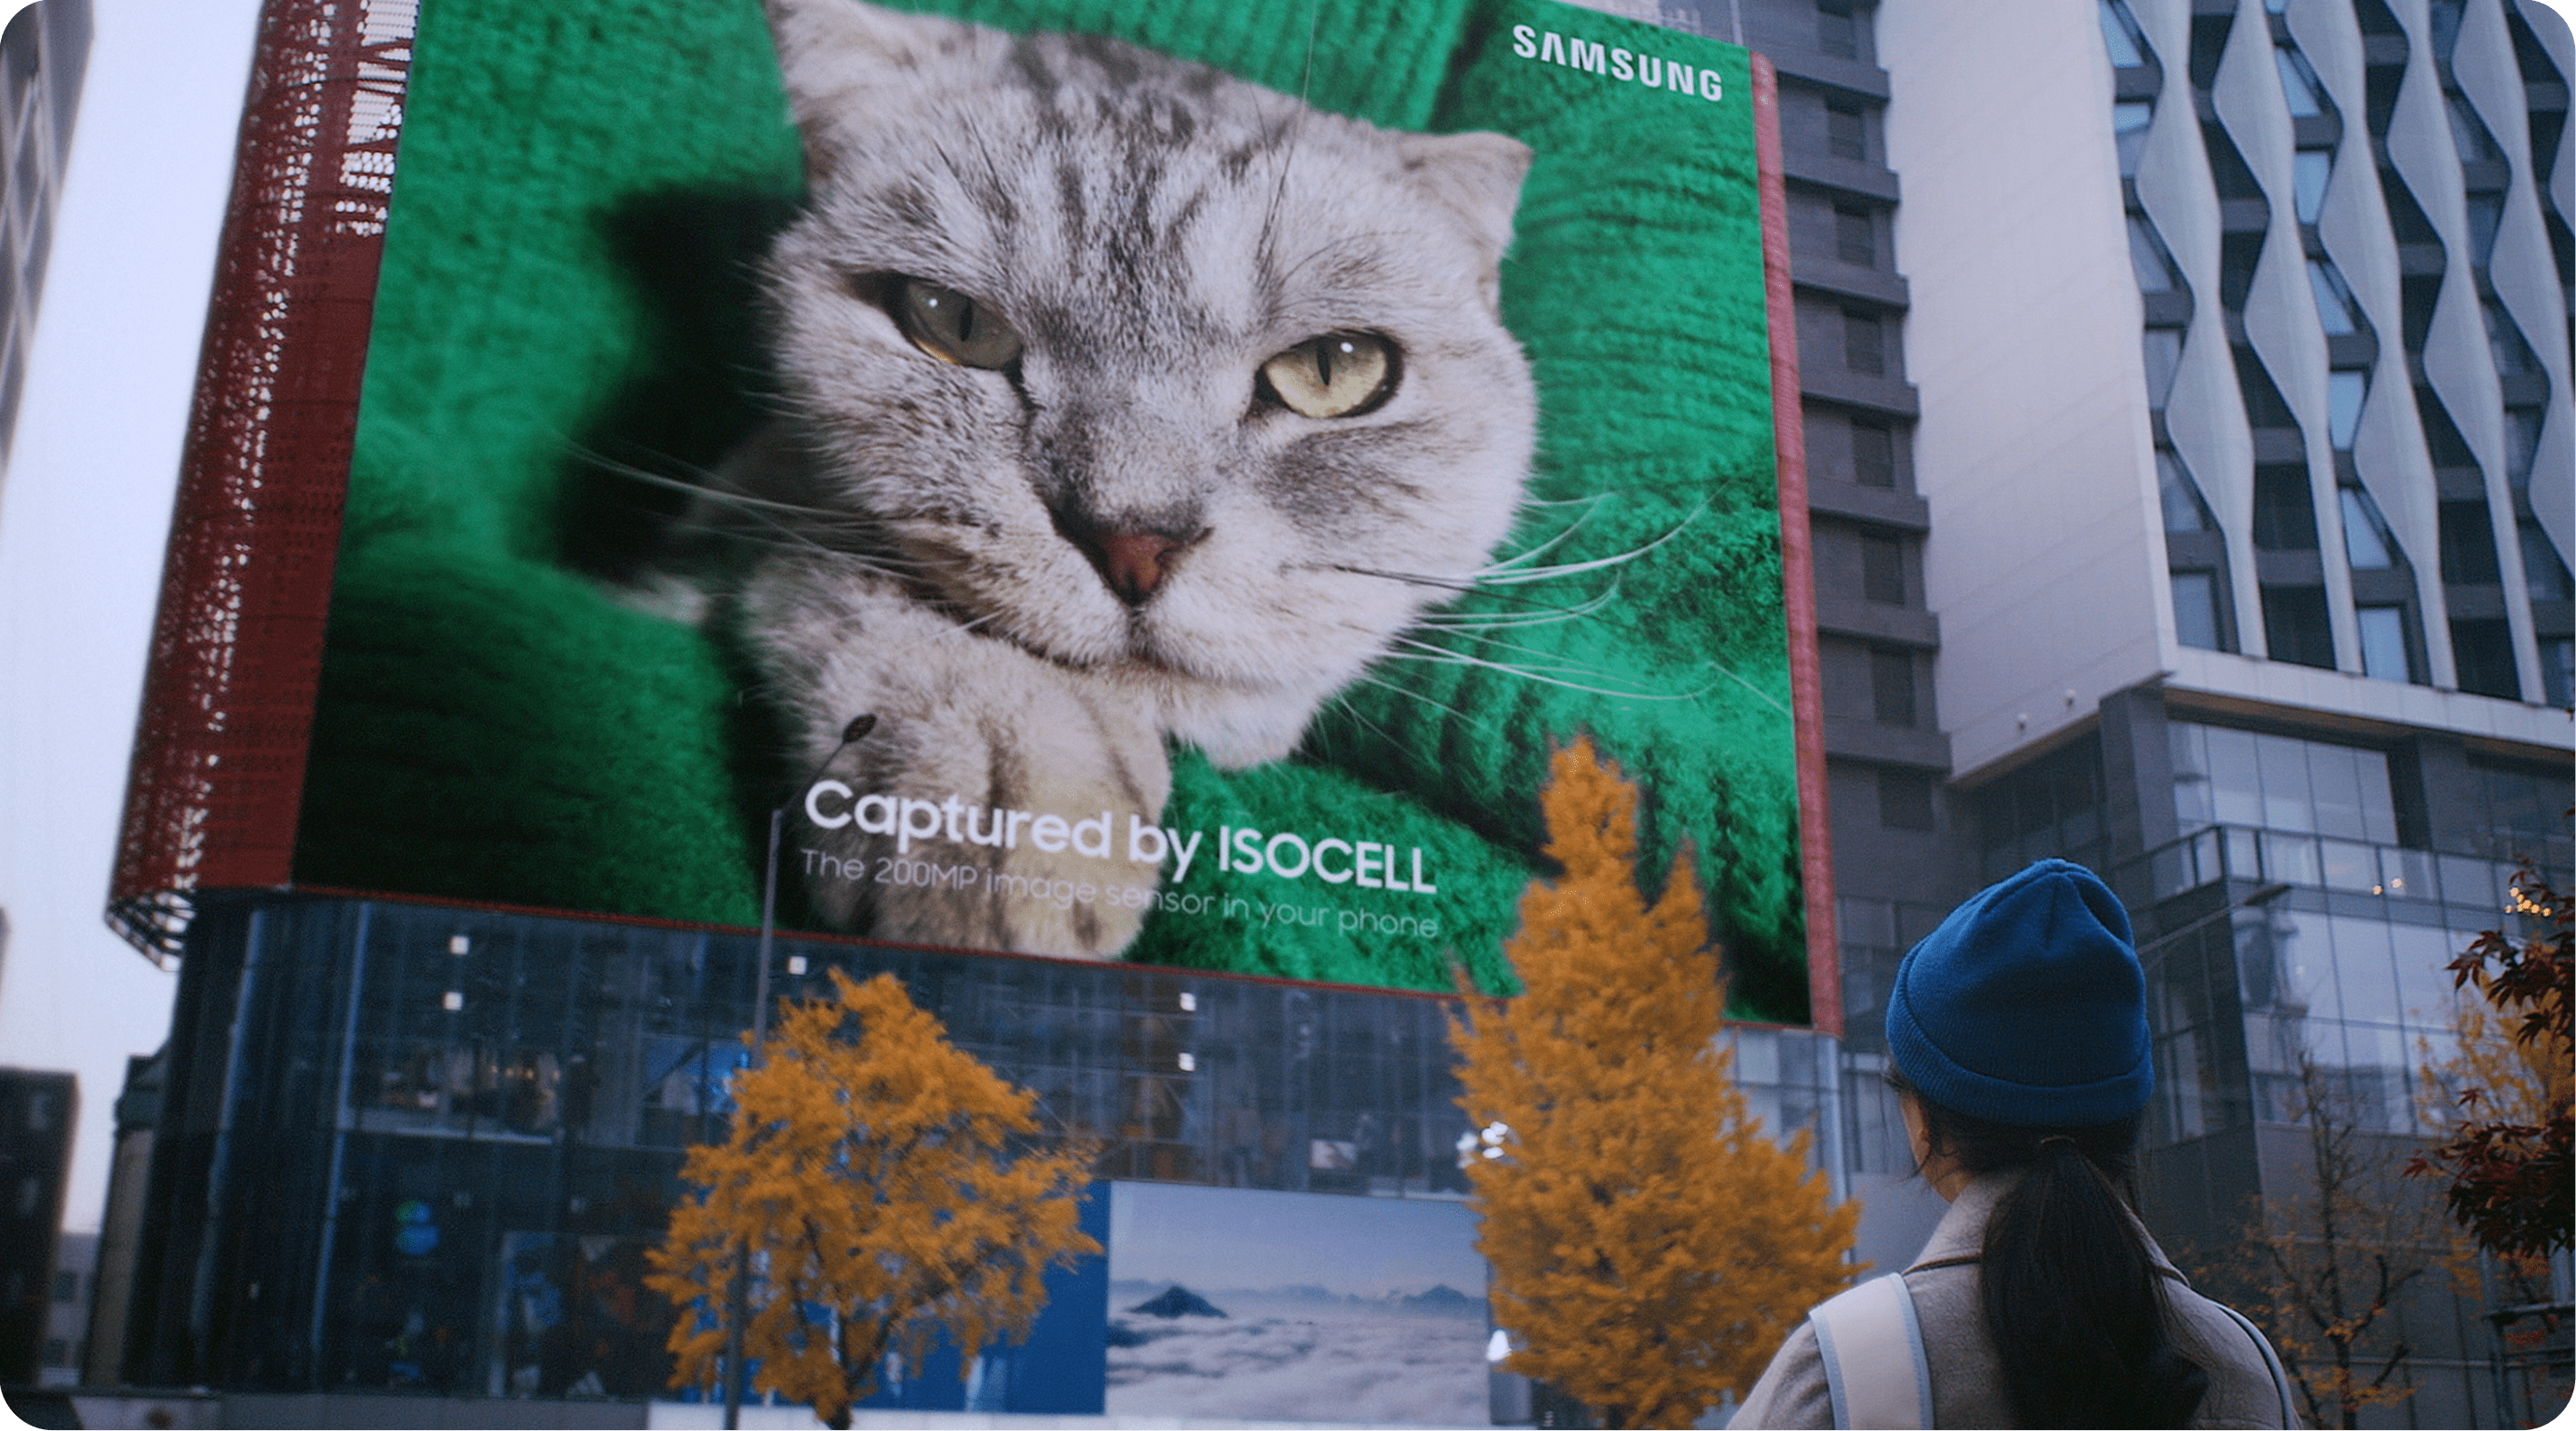 2億画素のサムスンのアイソセルイメージセンサーで制作した巨大な猫のプリントがビルに現れる